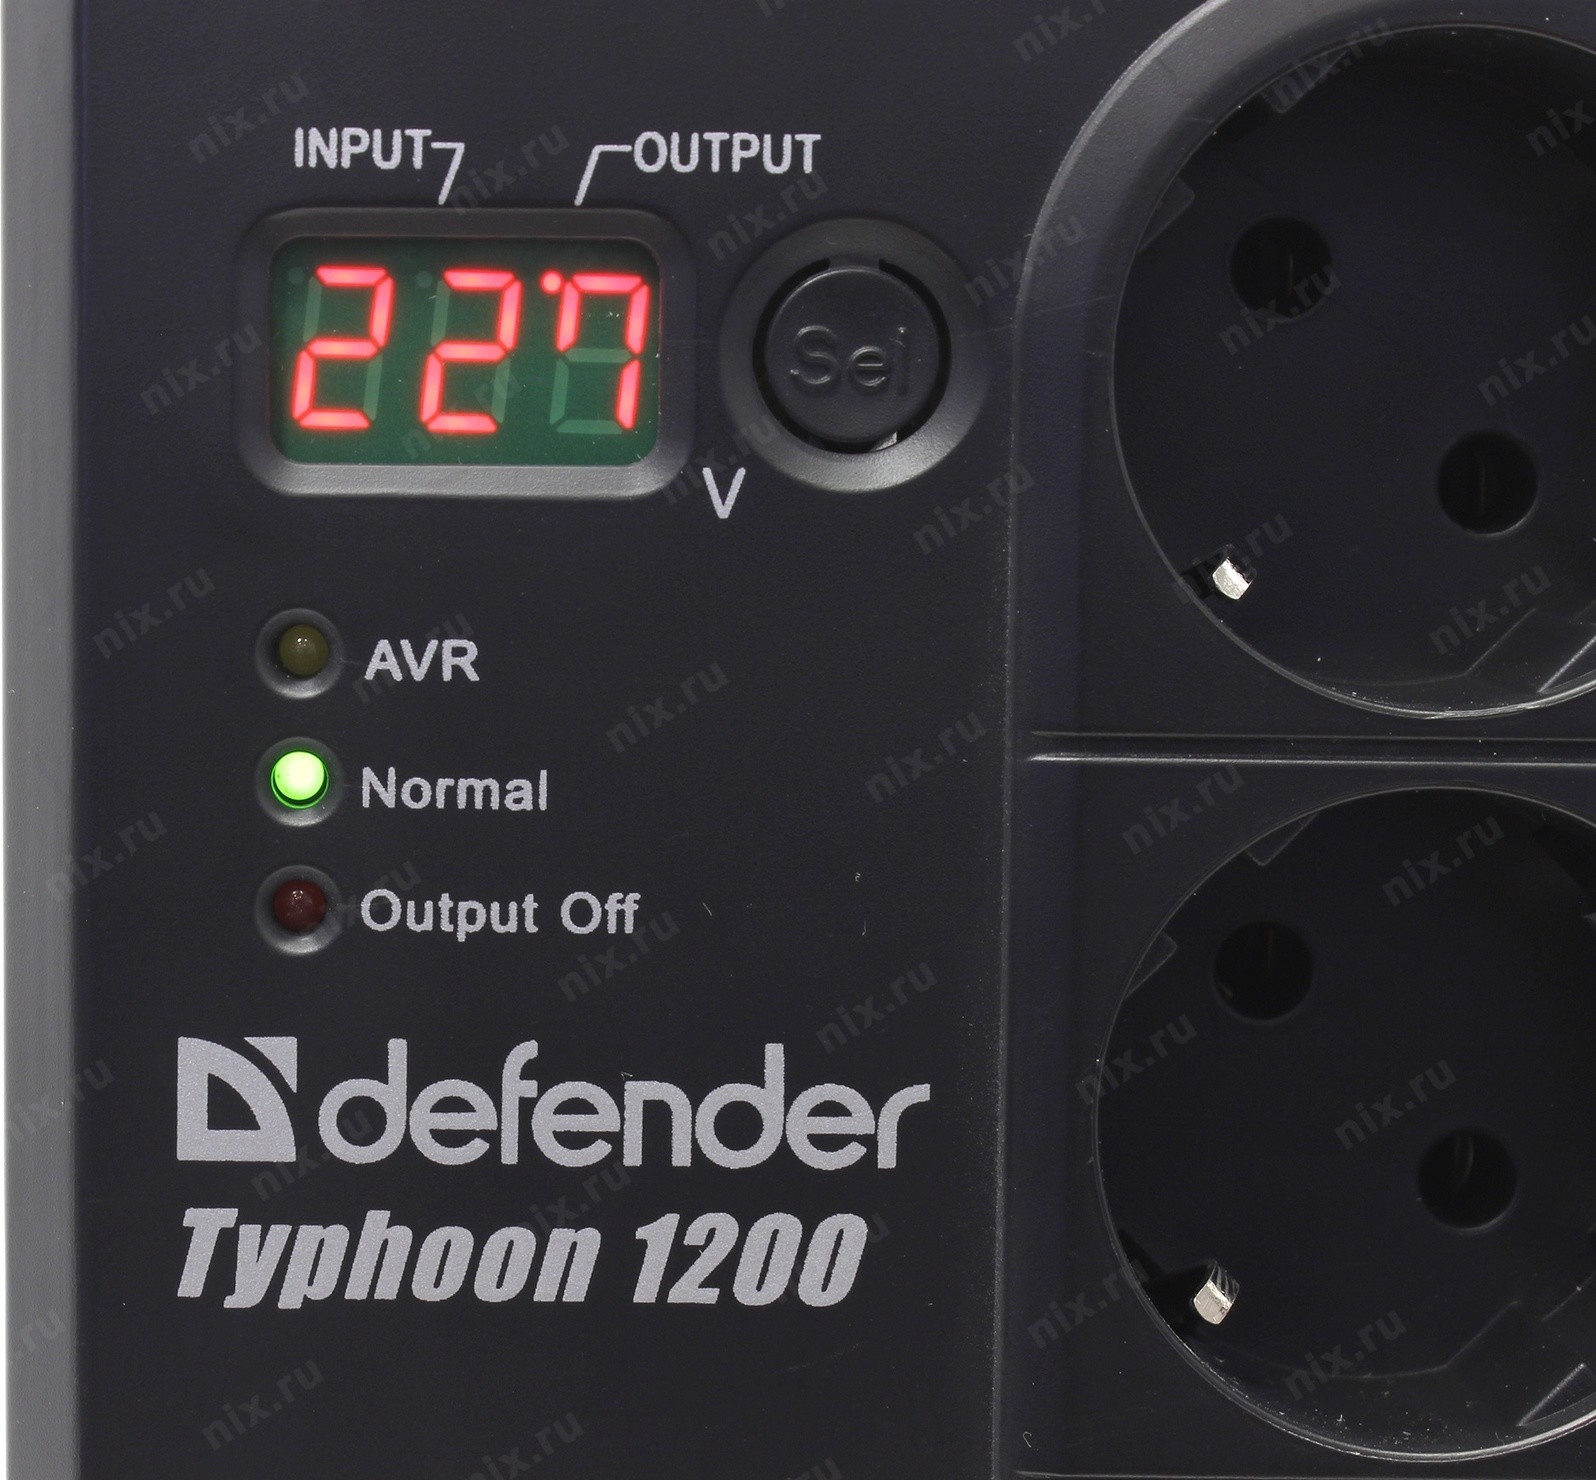 Defender typhoon 1000. Стабилизатор напряжения Defender AVR Typhoon 600. Стабилизатор Defender Typhoon 1200. Стабилизатор напряжения AVR Typhoon 1000 (320 Вт) Defender. Стабилизатор Defender 2000 индикаторы.